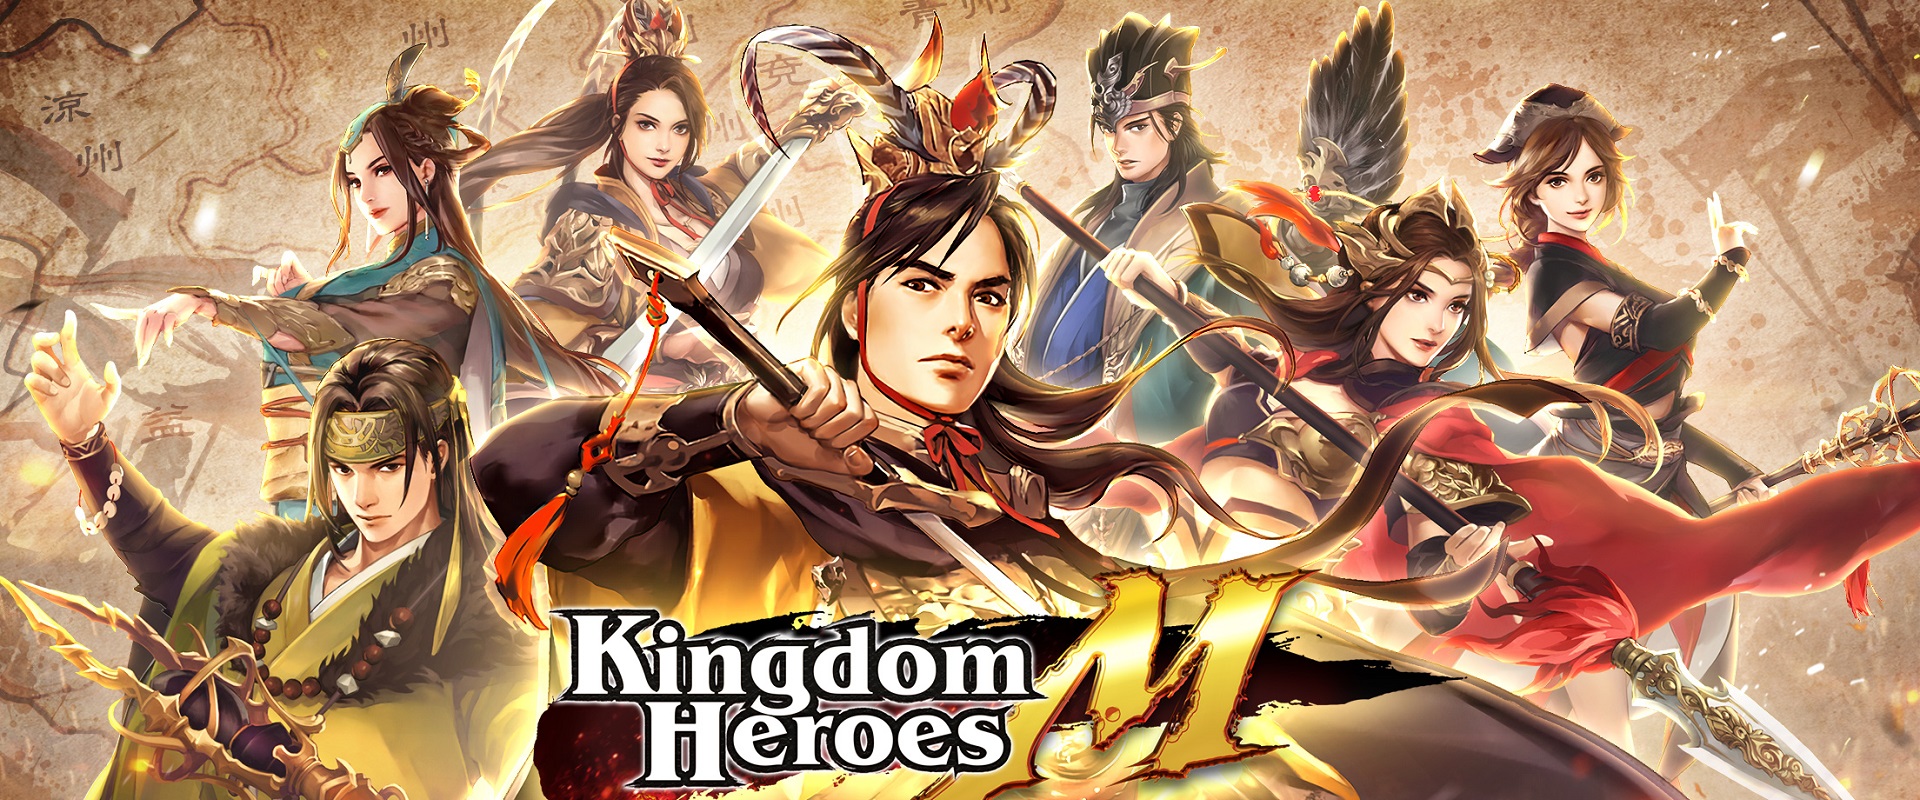 Download Kingdom Heroes M di PC dengan NoxPlayerGame Center